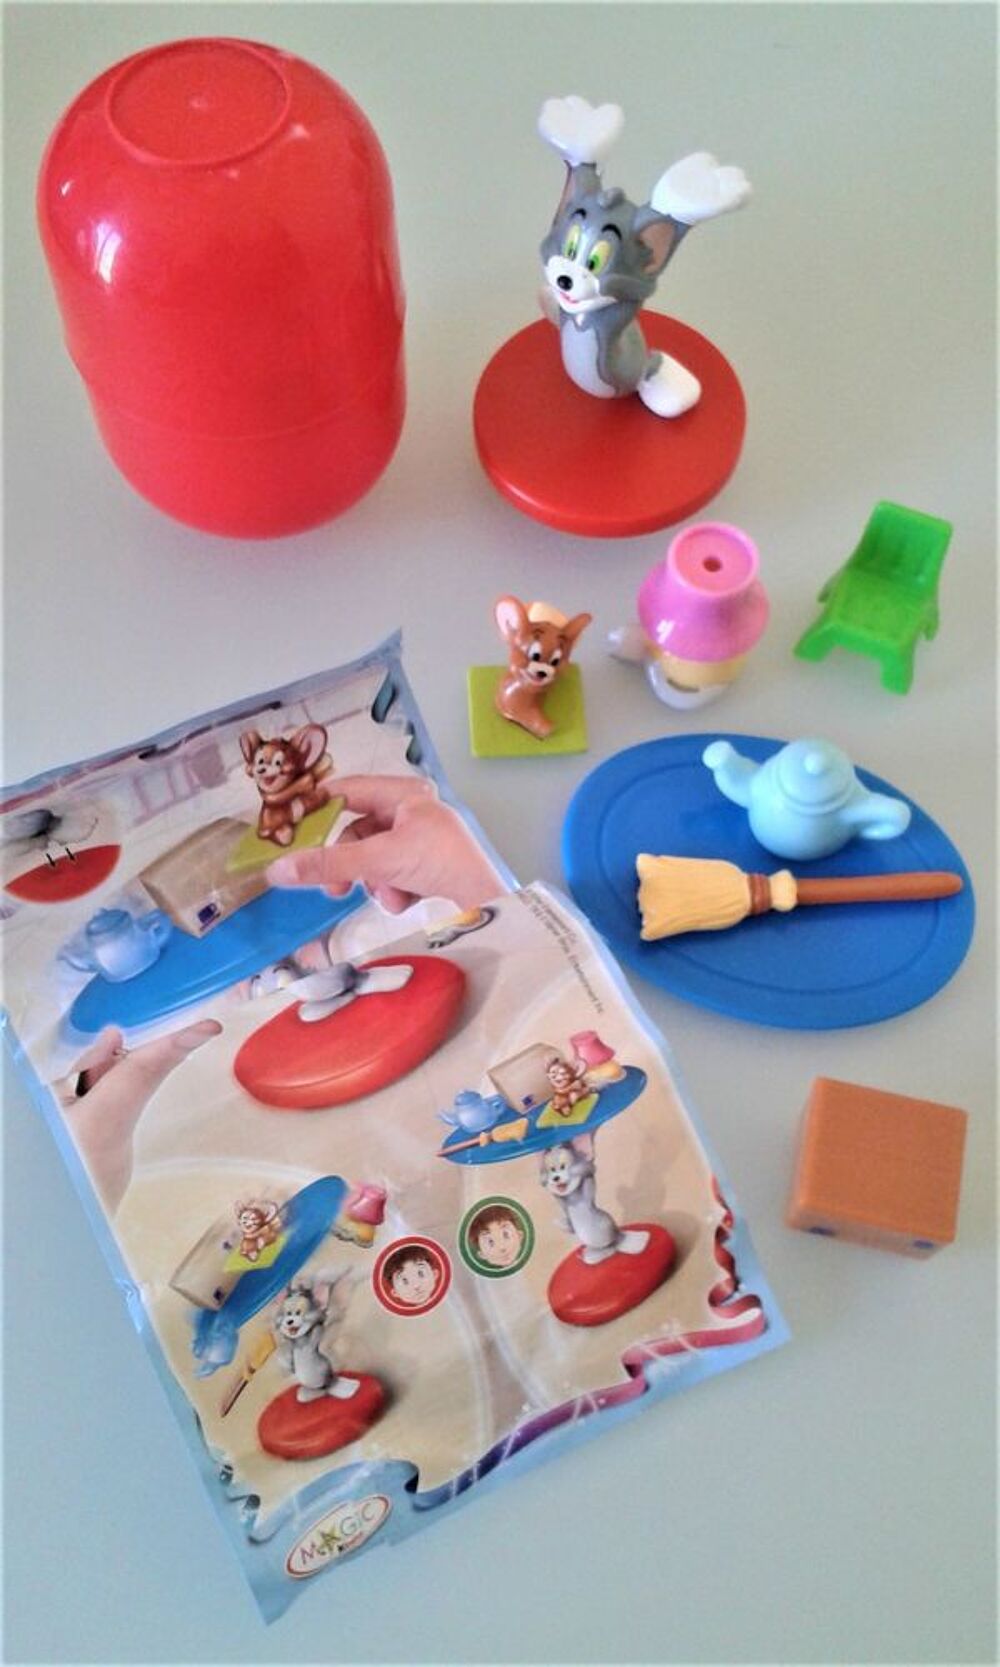 Kinder Magic Tom et Jerry Entier Collector NV-3-12
Jeux / jouets